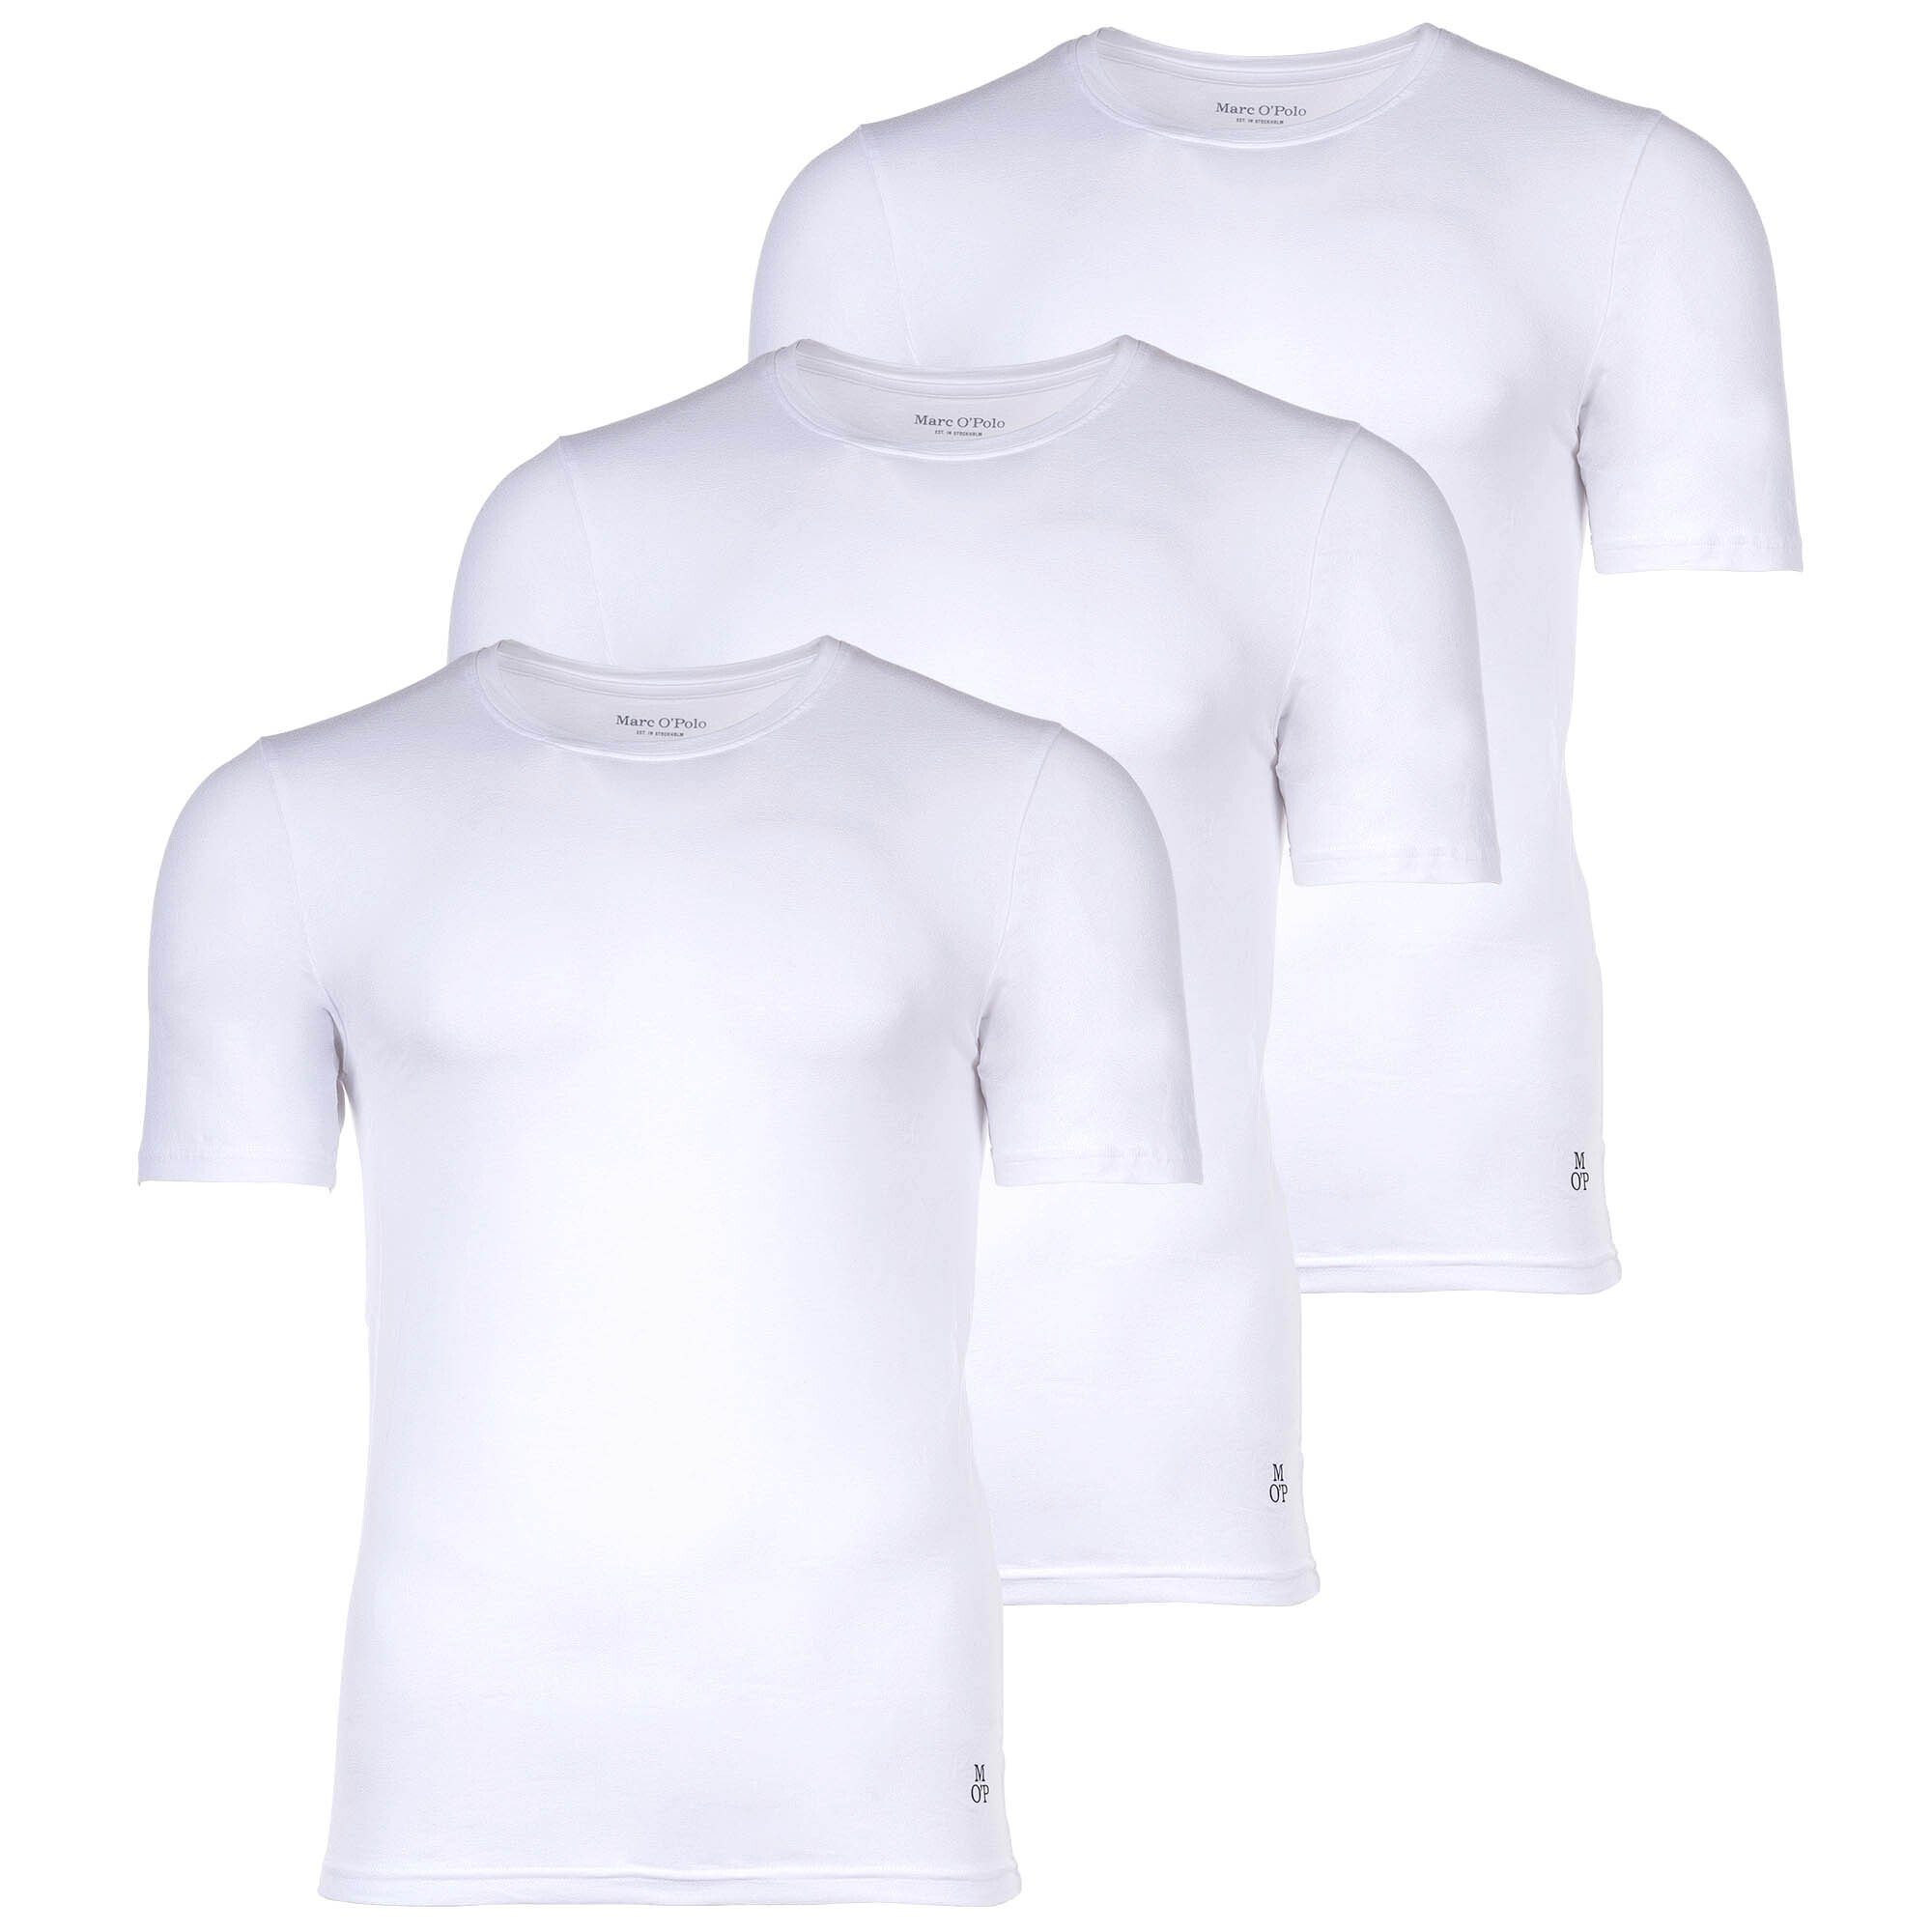 Herren O'Polo T-Shirt, Marc Pack Rundhals Shirt, 3er - Weiß T-Shirt